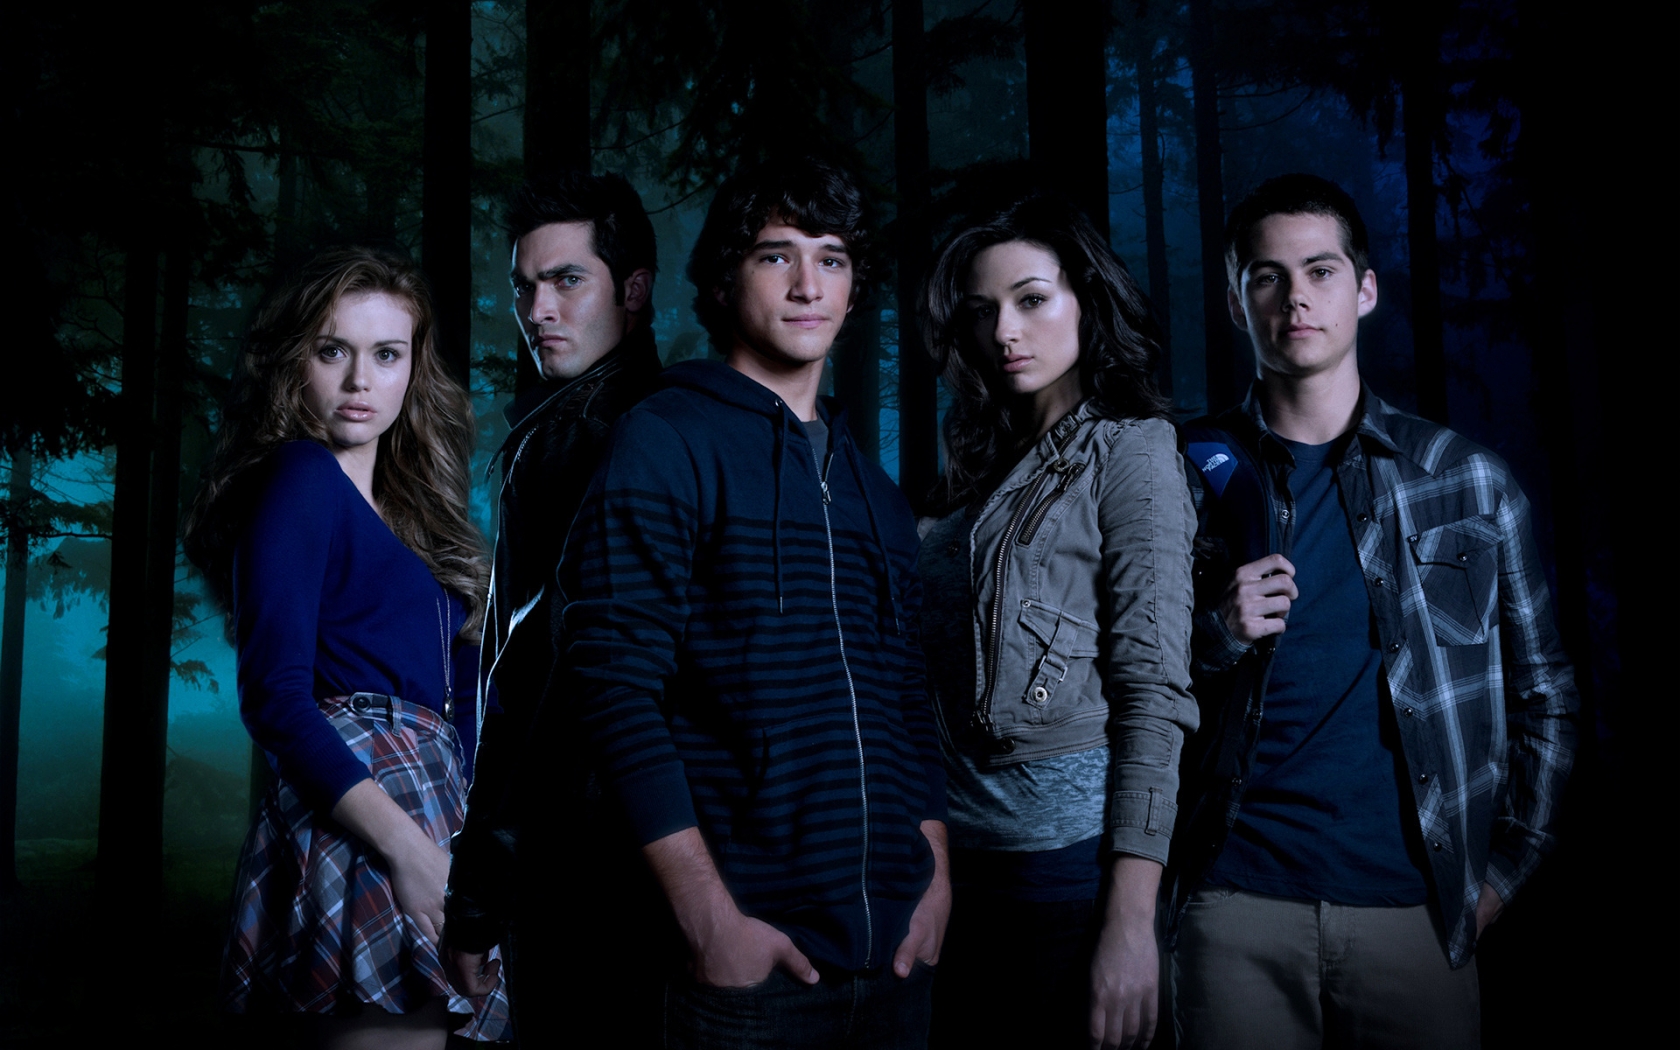 Teen Wolf Cast for 1680 x 1050 widescreen resolution